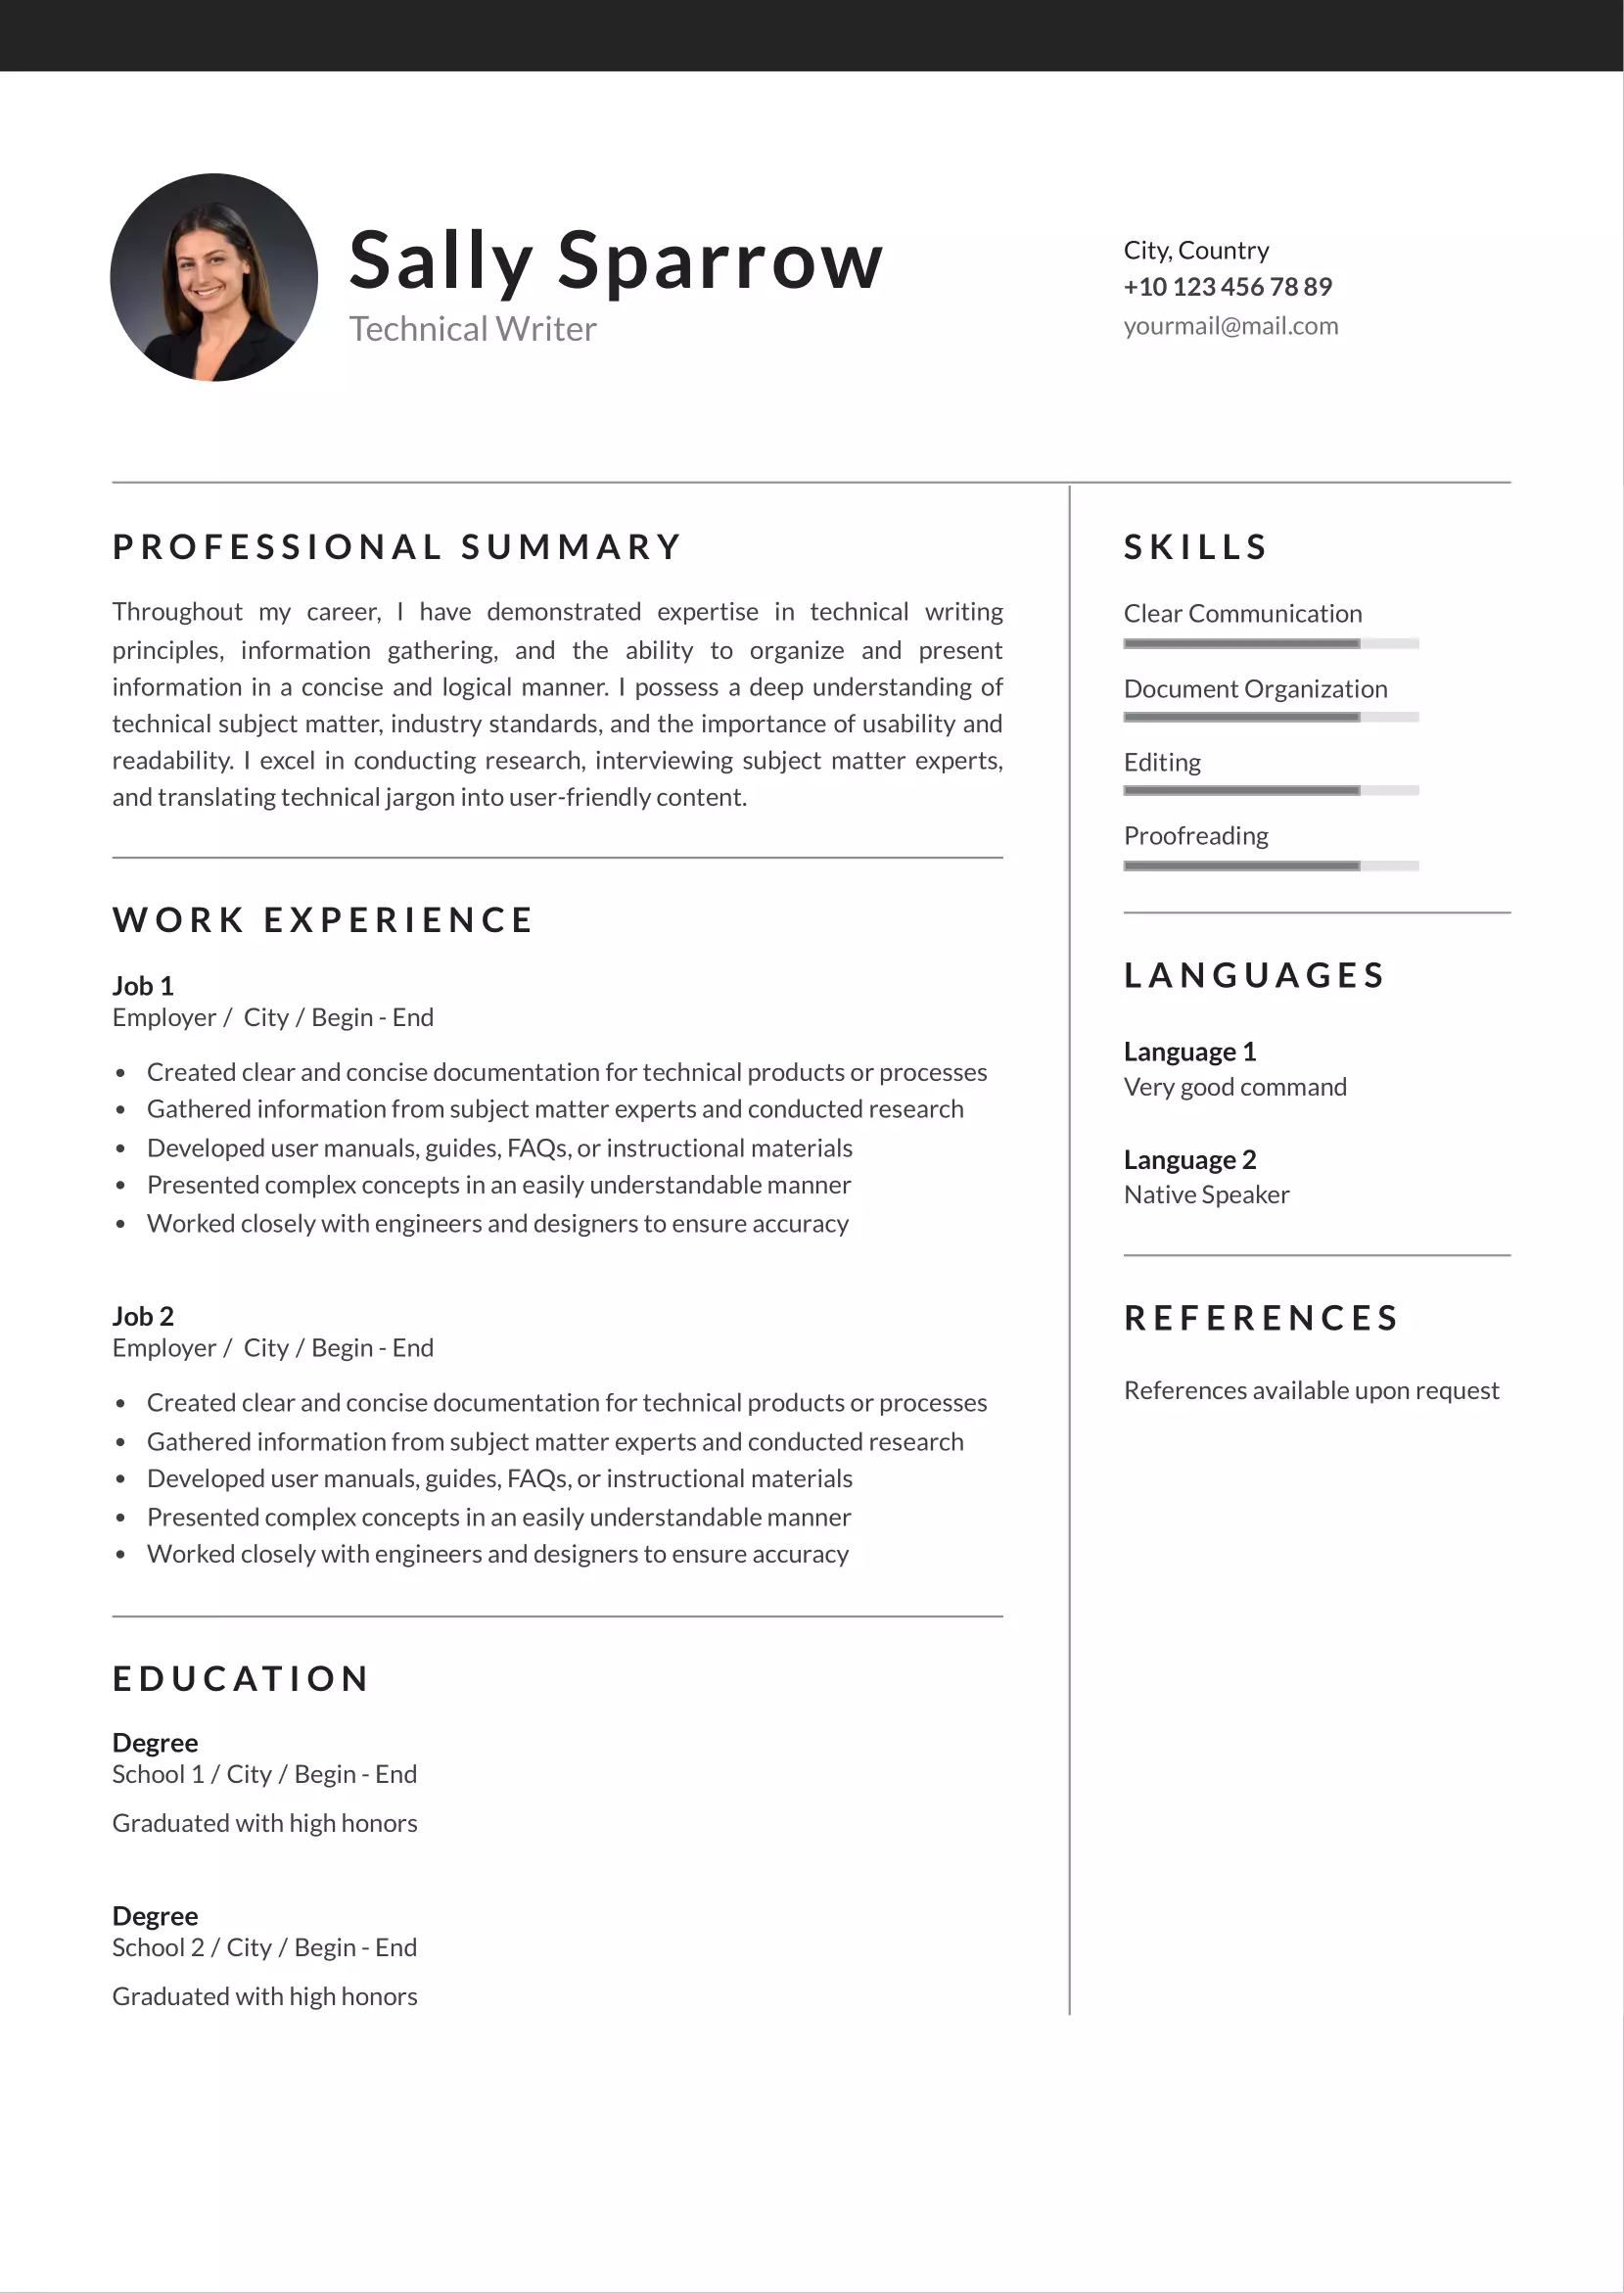 Technical writer resume CV